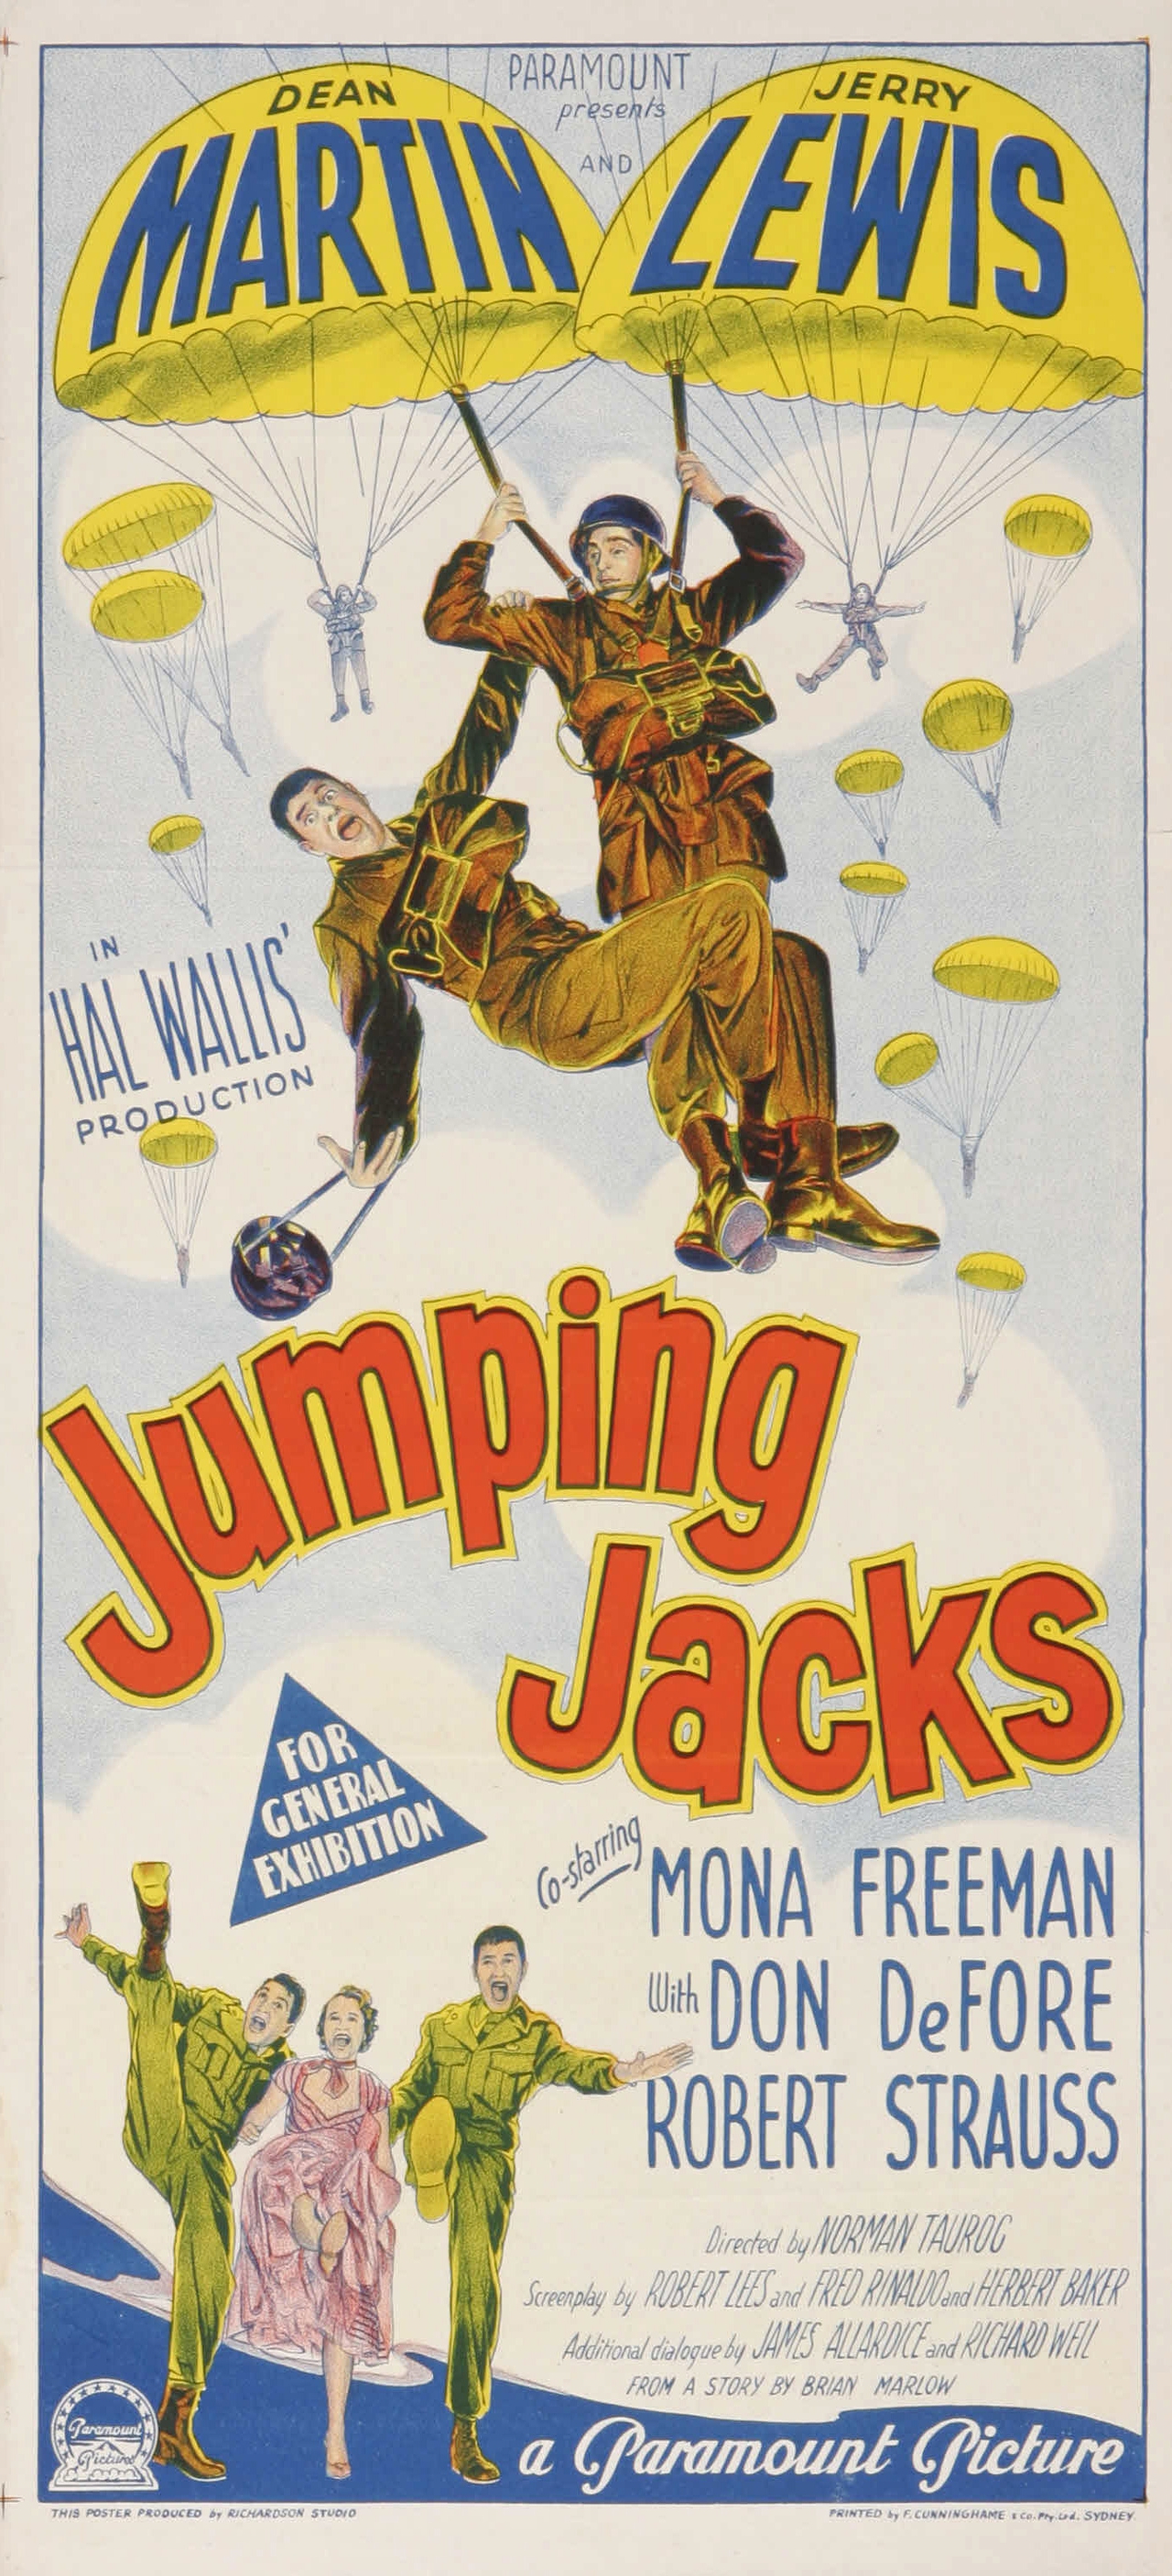  فیلم سینمایی Jumping Jacks به کارگردانی Norman Taurog